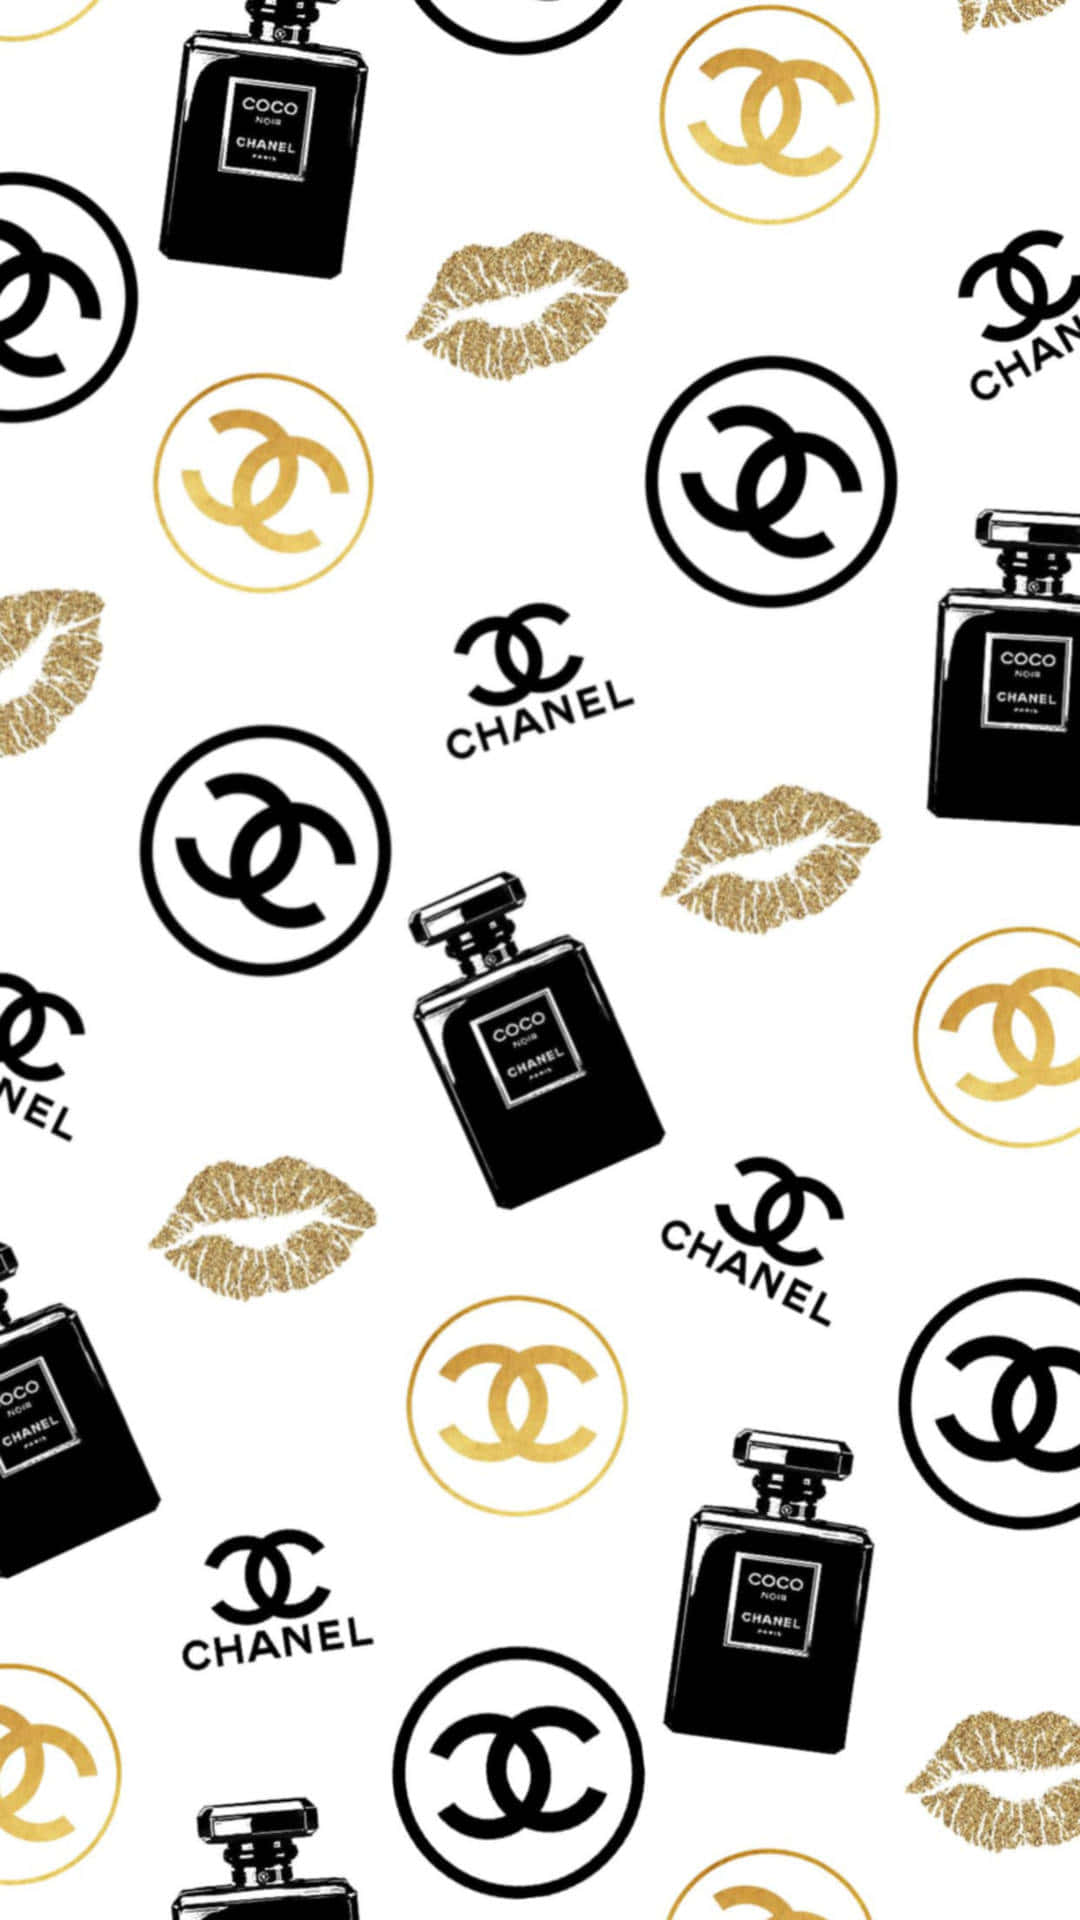 Descubrao Mundo Do Luxo E Da Sofisticação Atemporal Com A Chanel.